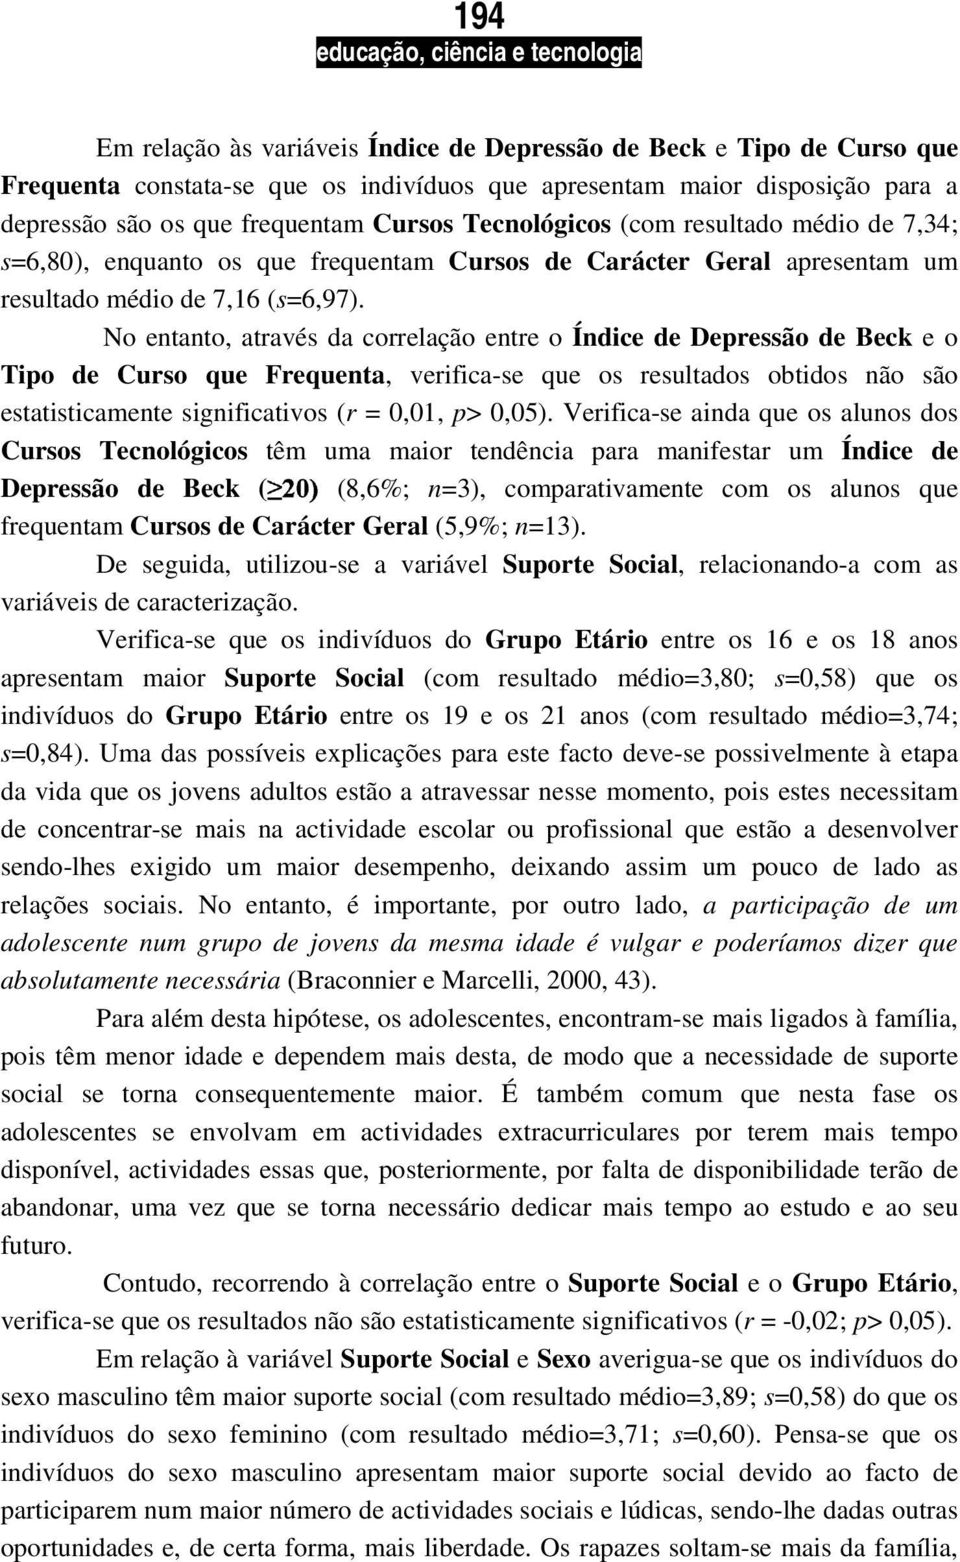 o entanto, através da correlação entre o Índice de Depressão de Beck e o Tipo de Curso que Frequenta, verifica-se que os resultados obtidos não são estatisticamente significativos (r = 0,01, p> 0,05).